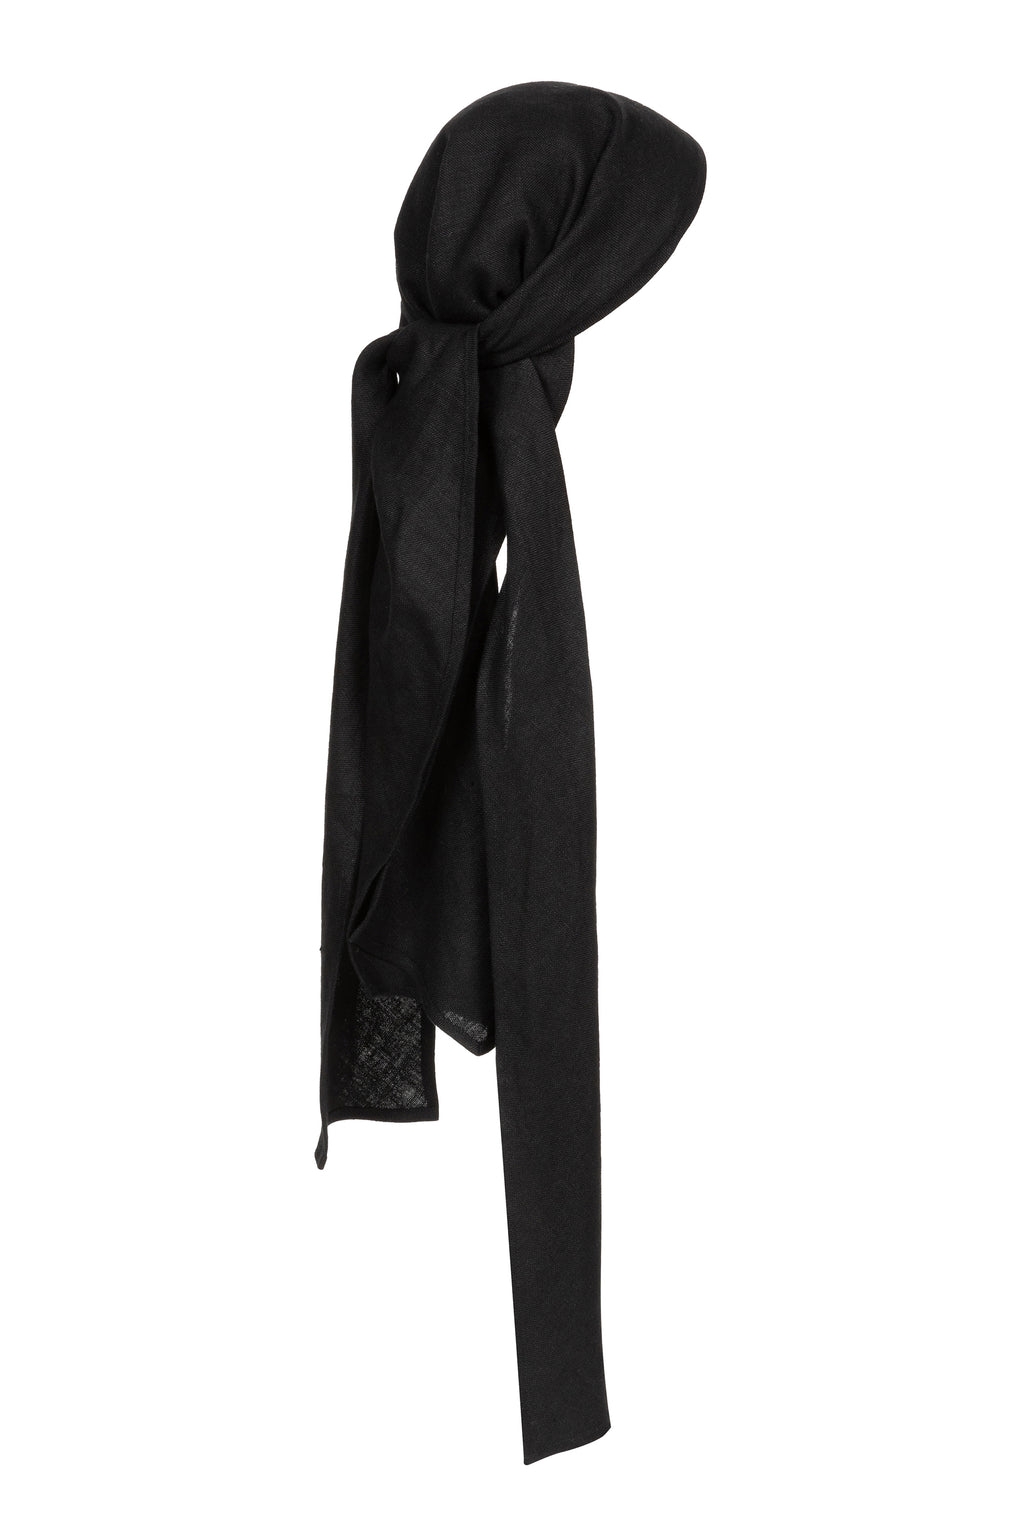 Roshan scarf | Black - Linen